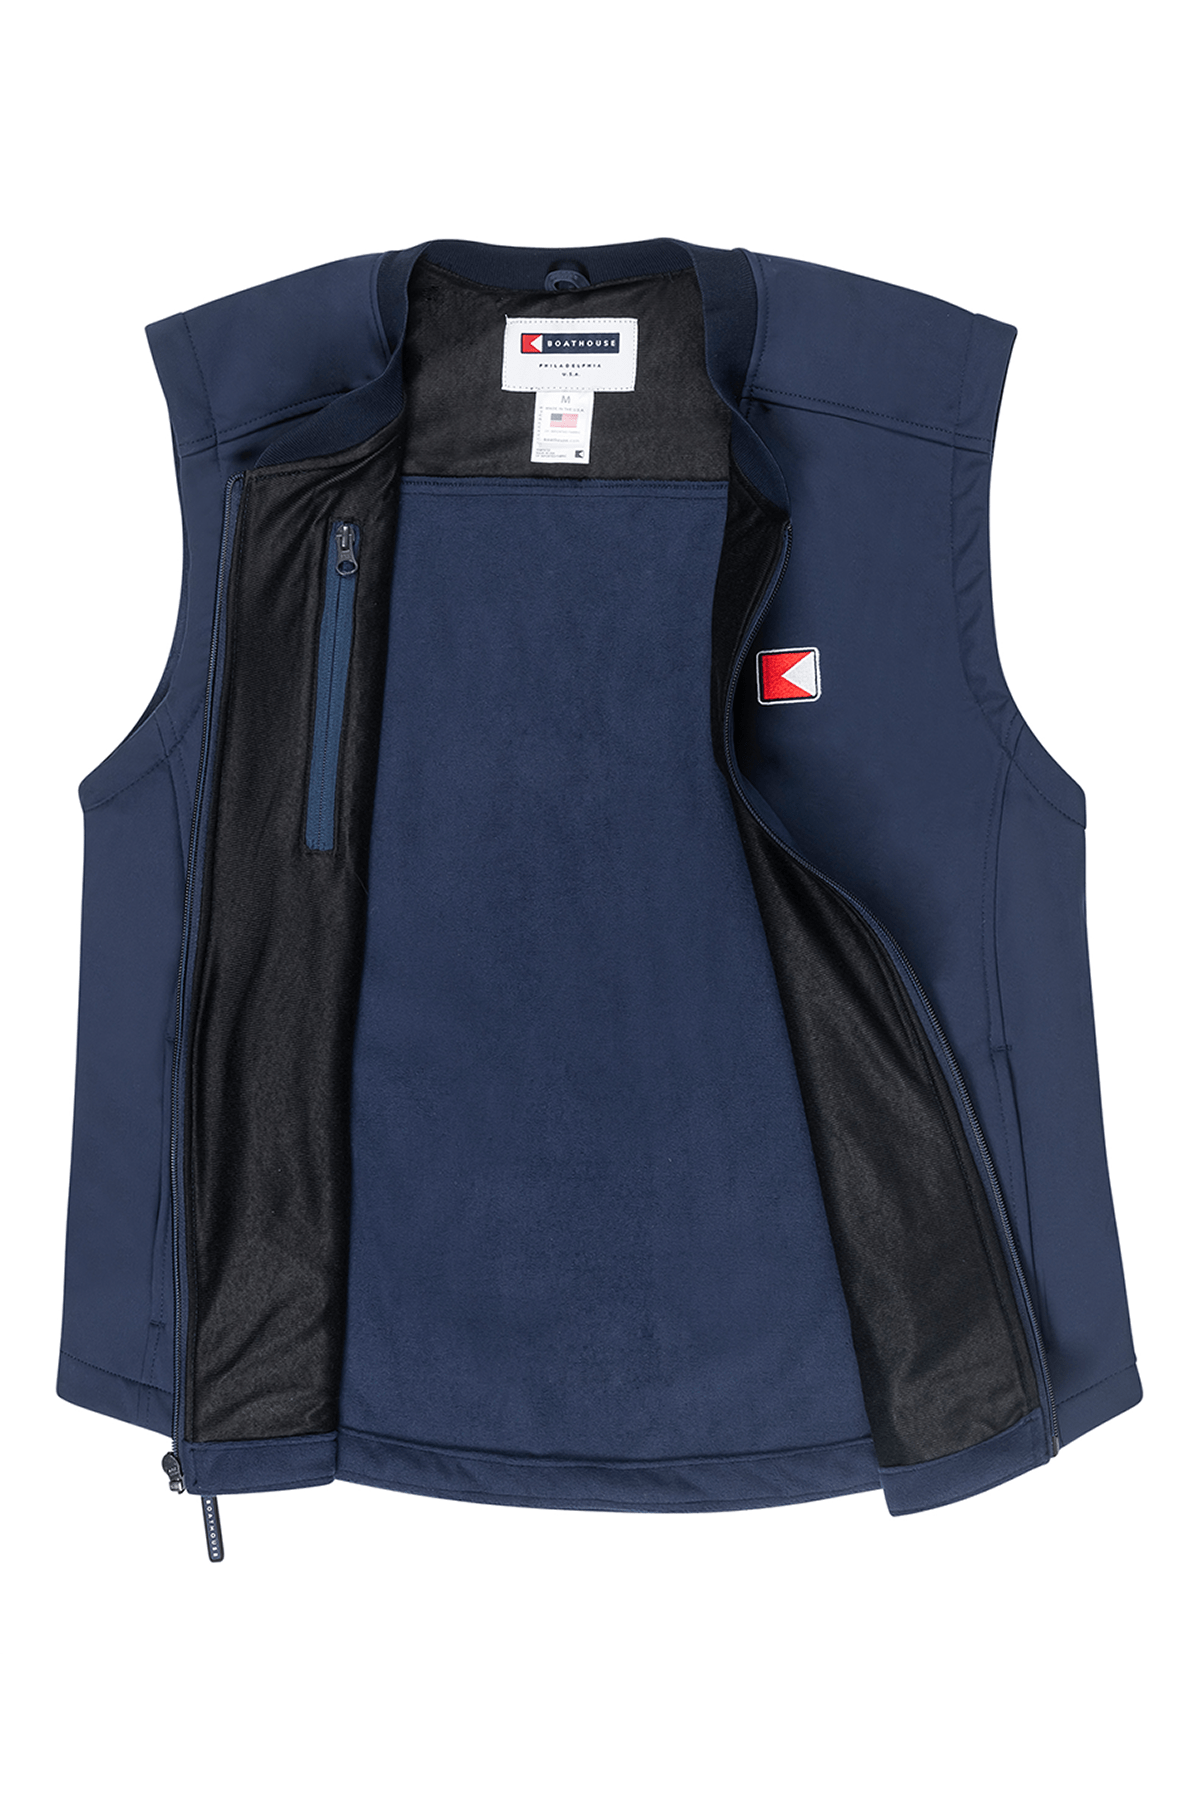 BOATHOUSE Men's Liberty Soft Shell Vest